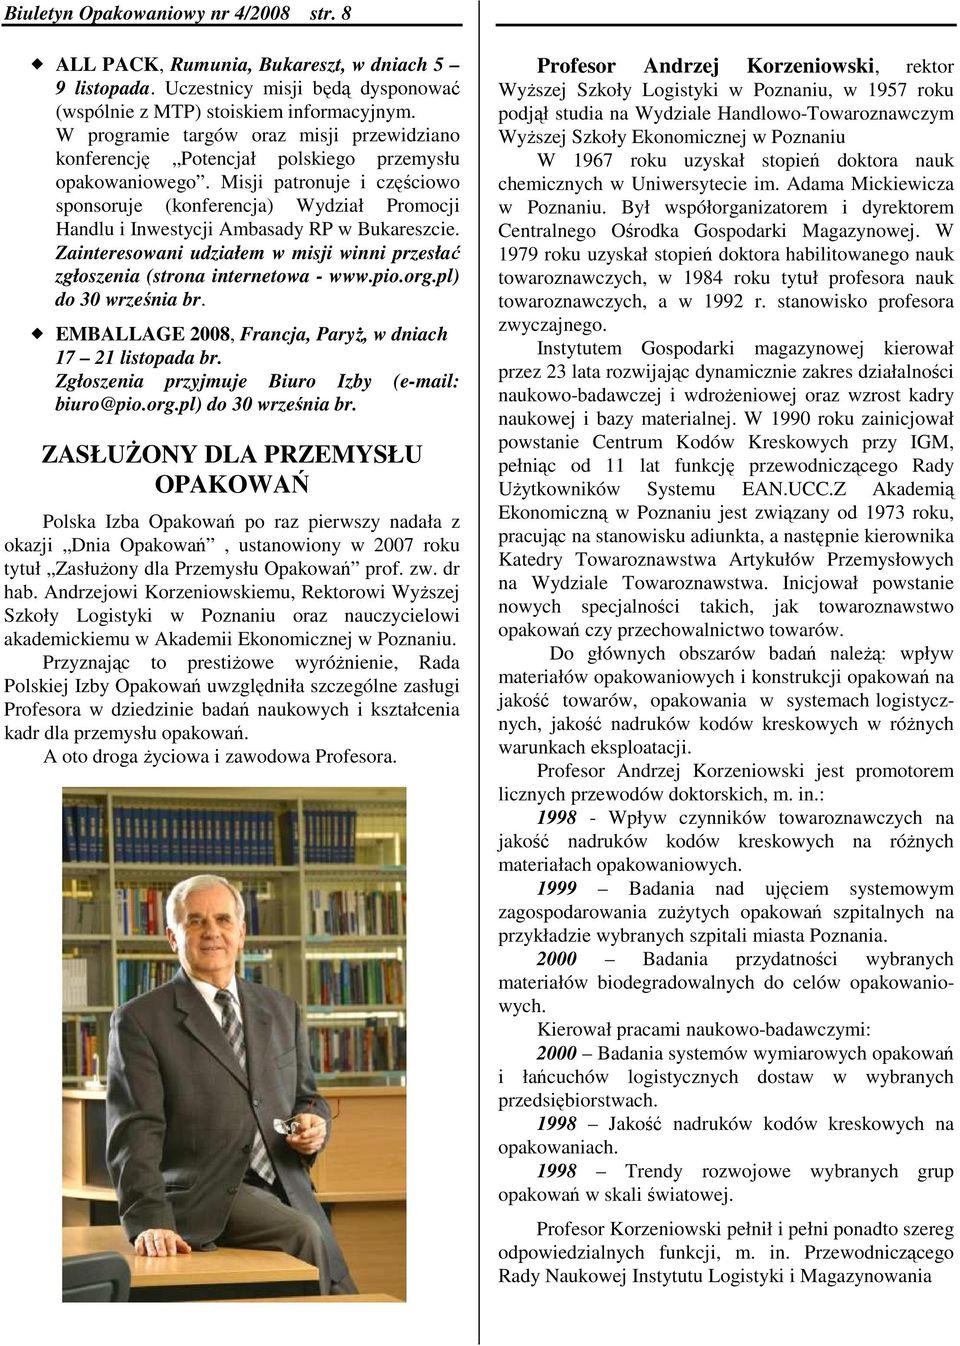 Misji patronuje i częściowo sponsoruje (konferencja) Wydział Promocji Handlu i Inwestycji Ambasady RP w Bukareszcie.